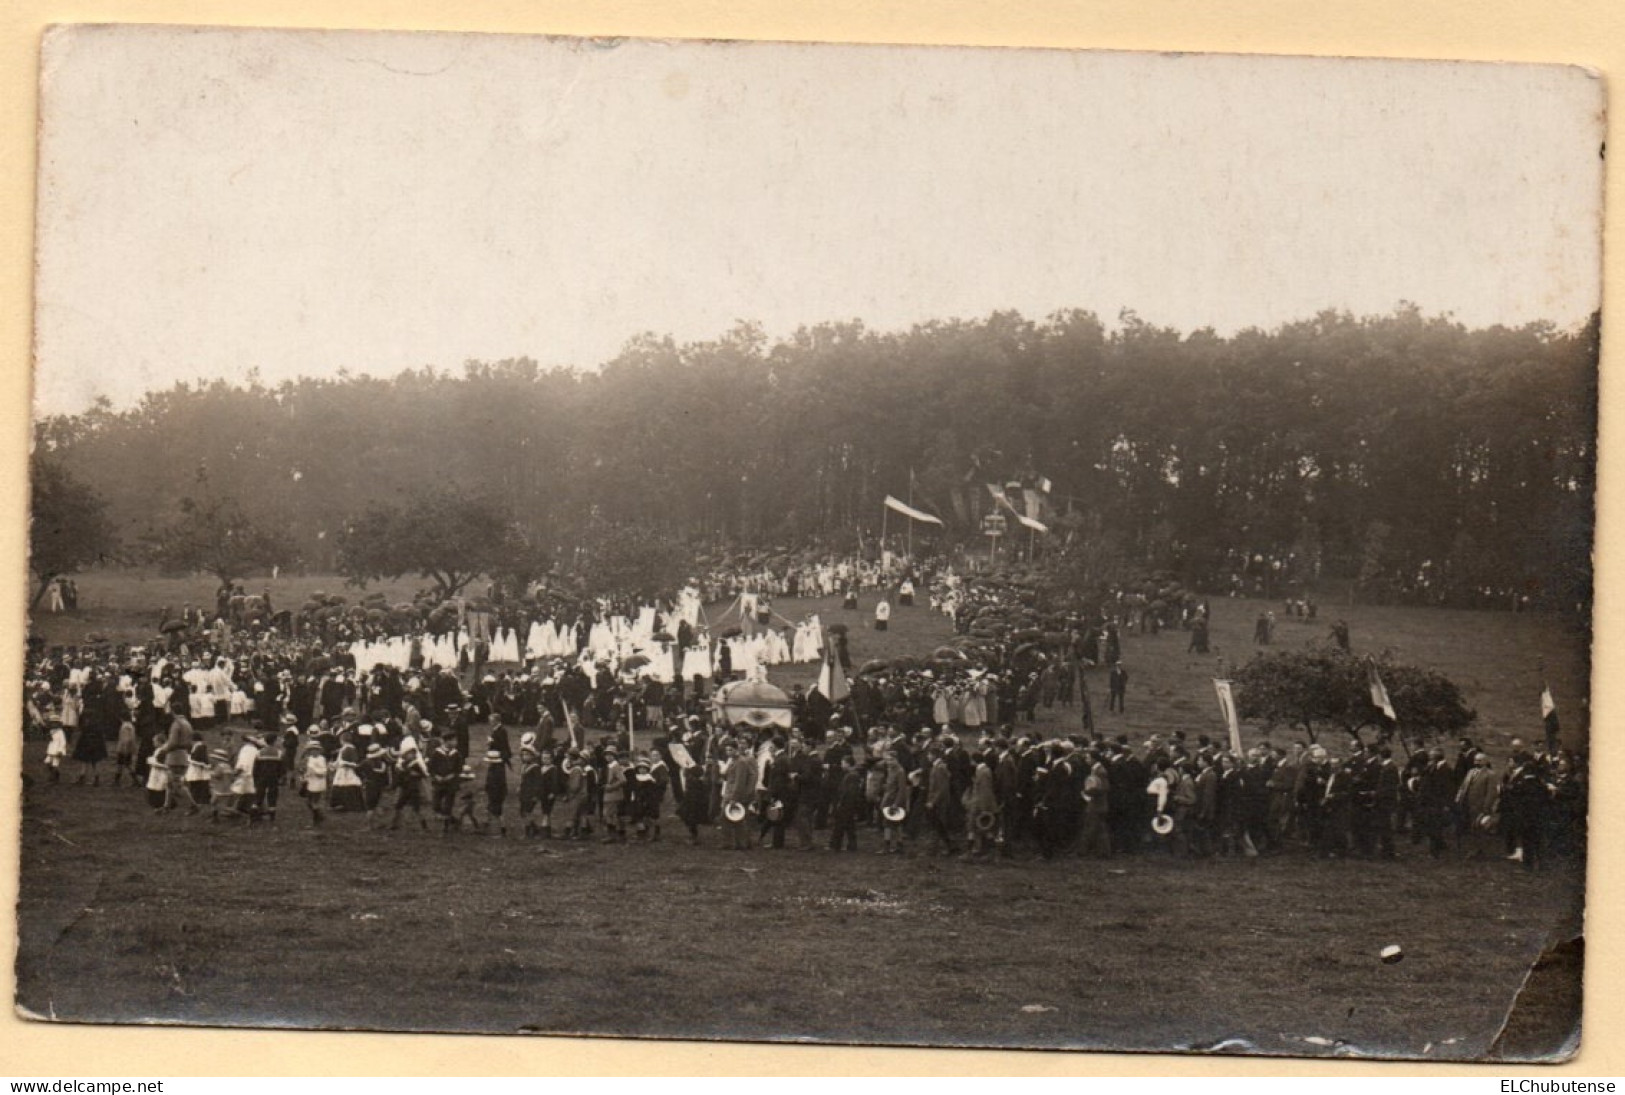 Cpa Photo Foule Procession Religieuse Dans Prairie Années 1910 à Situer - Demonstrationen